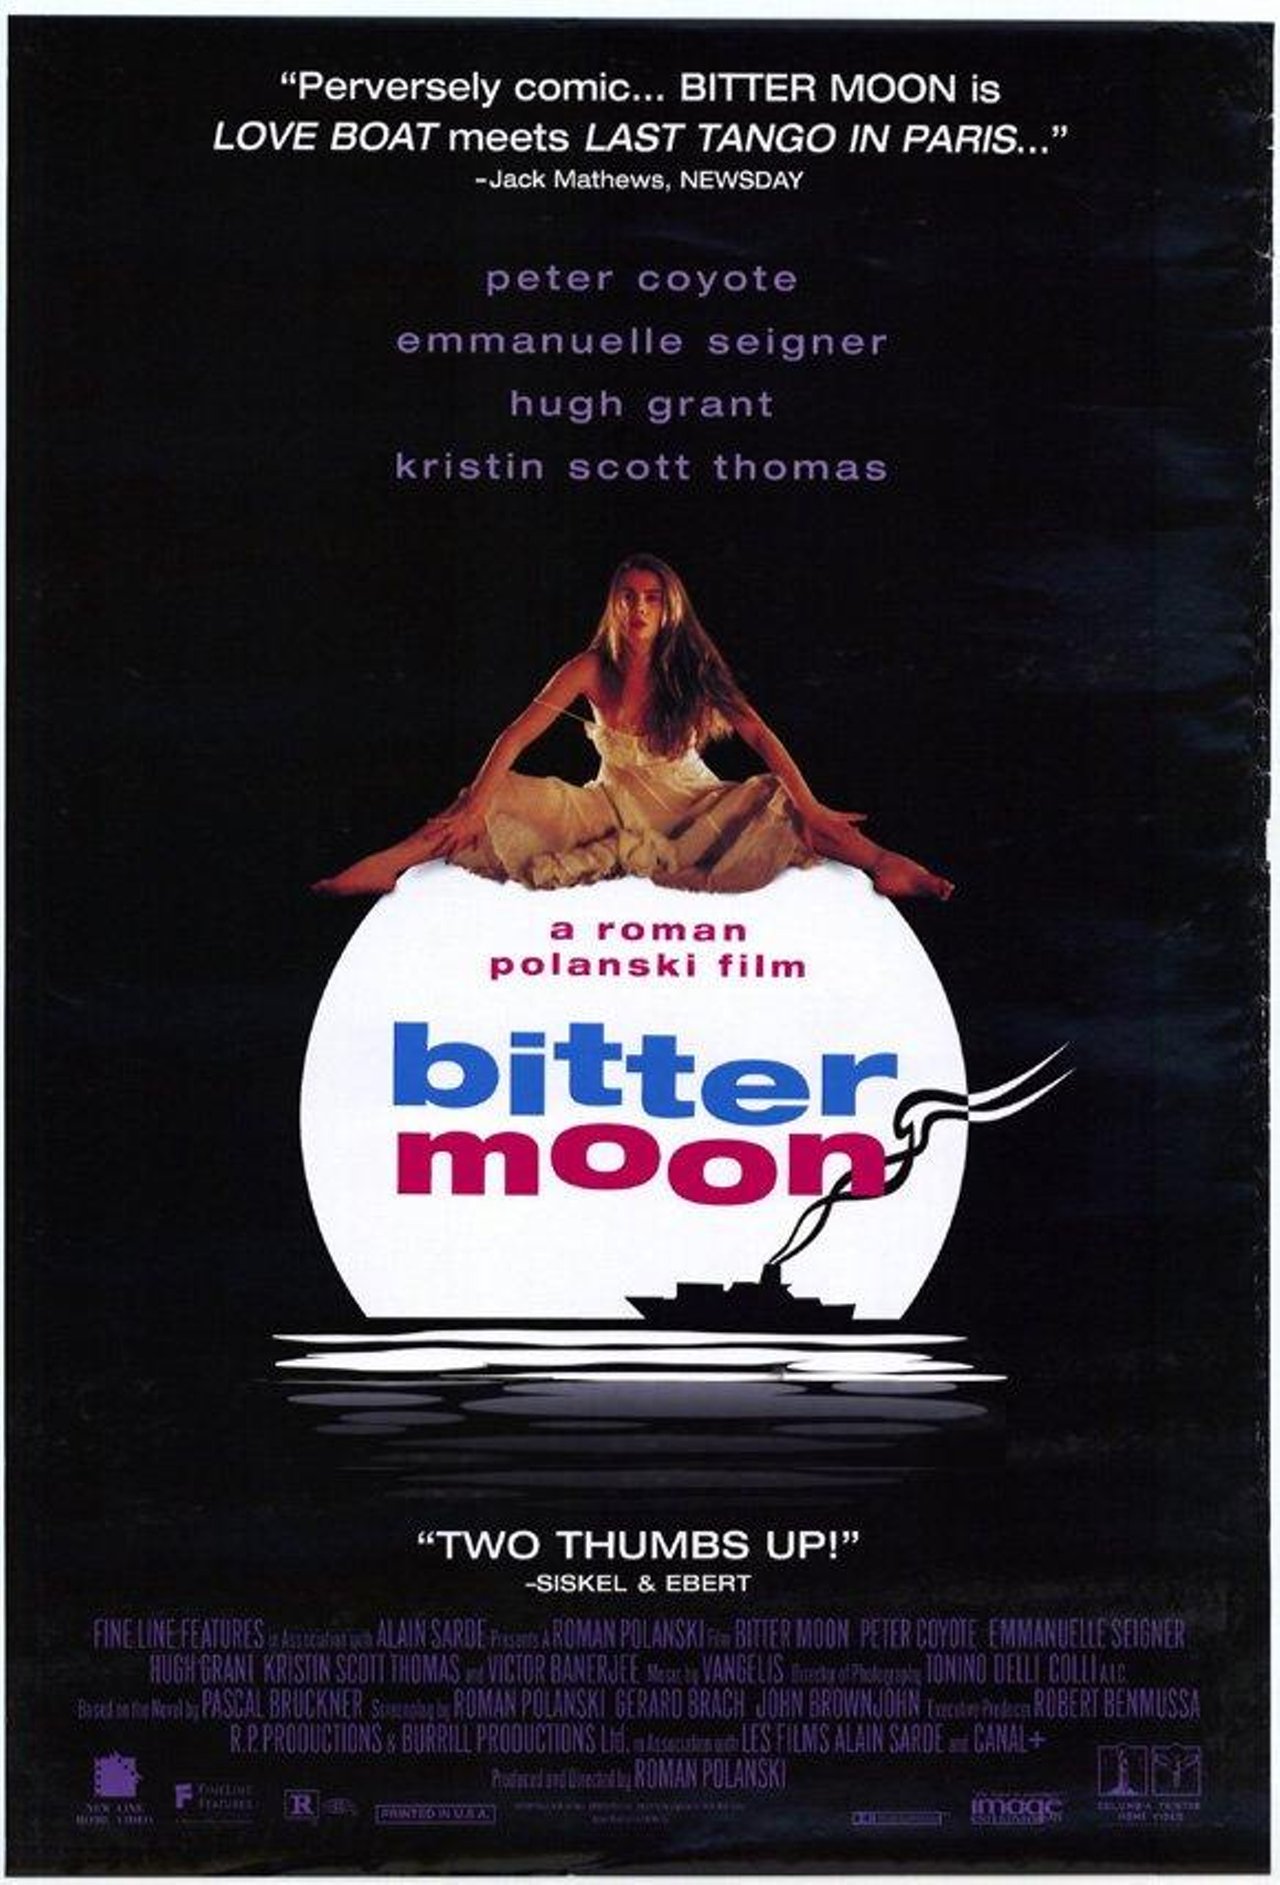 Горькая луна полански. Горькая Луна | Bitter Moon (1992). Горькая Луна / Bitter Moon (1992) Постер.